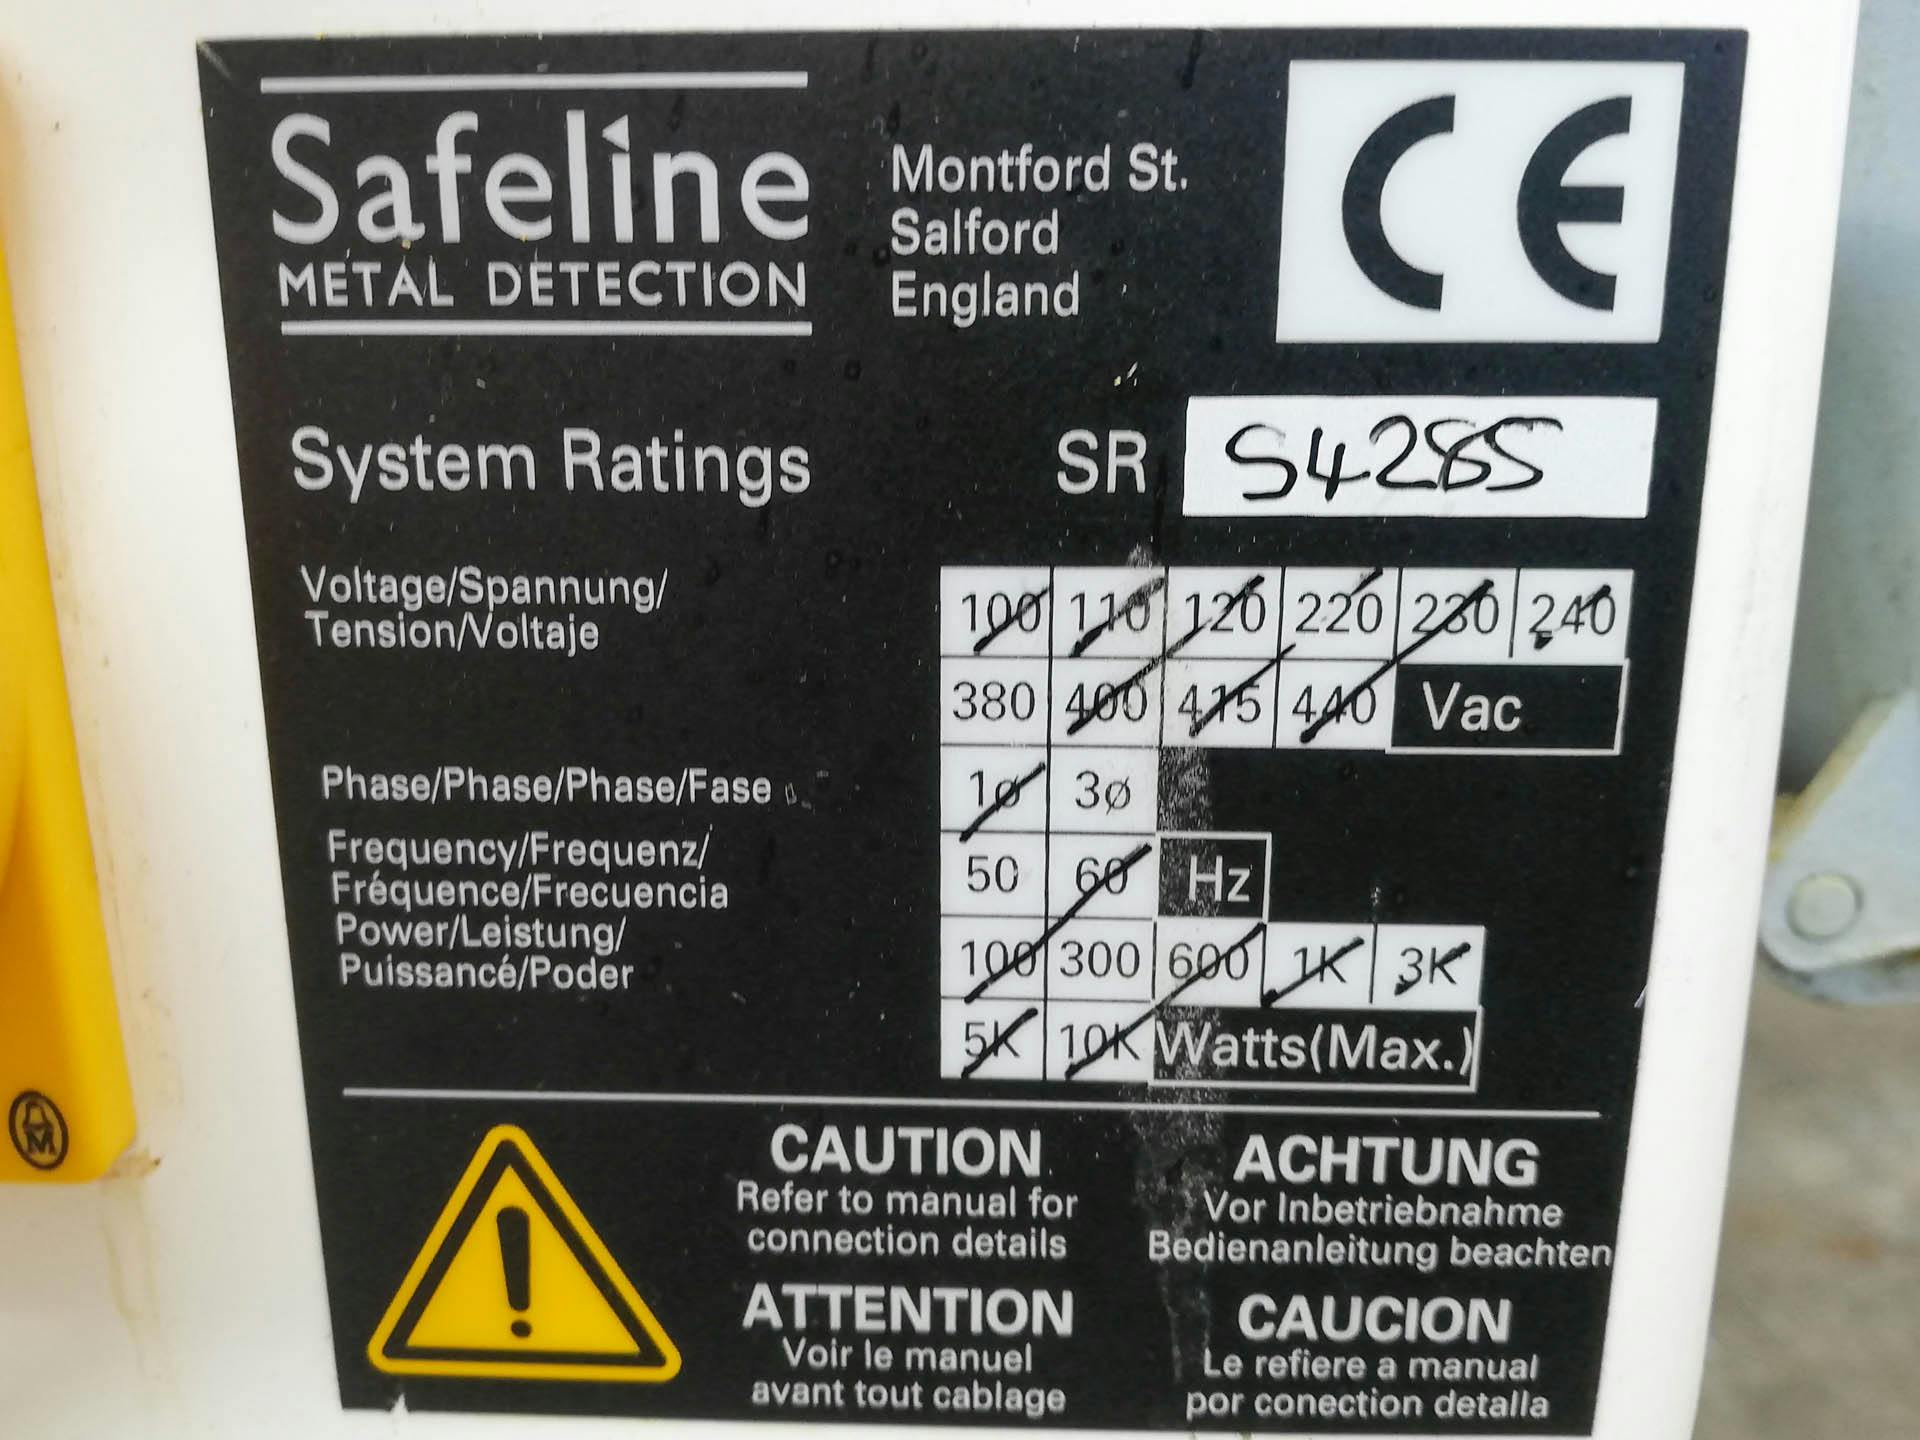 Safeline Uk Signature 2 - Wykrywacz metalu - image 5